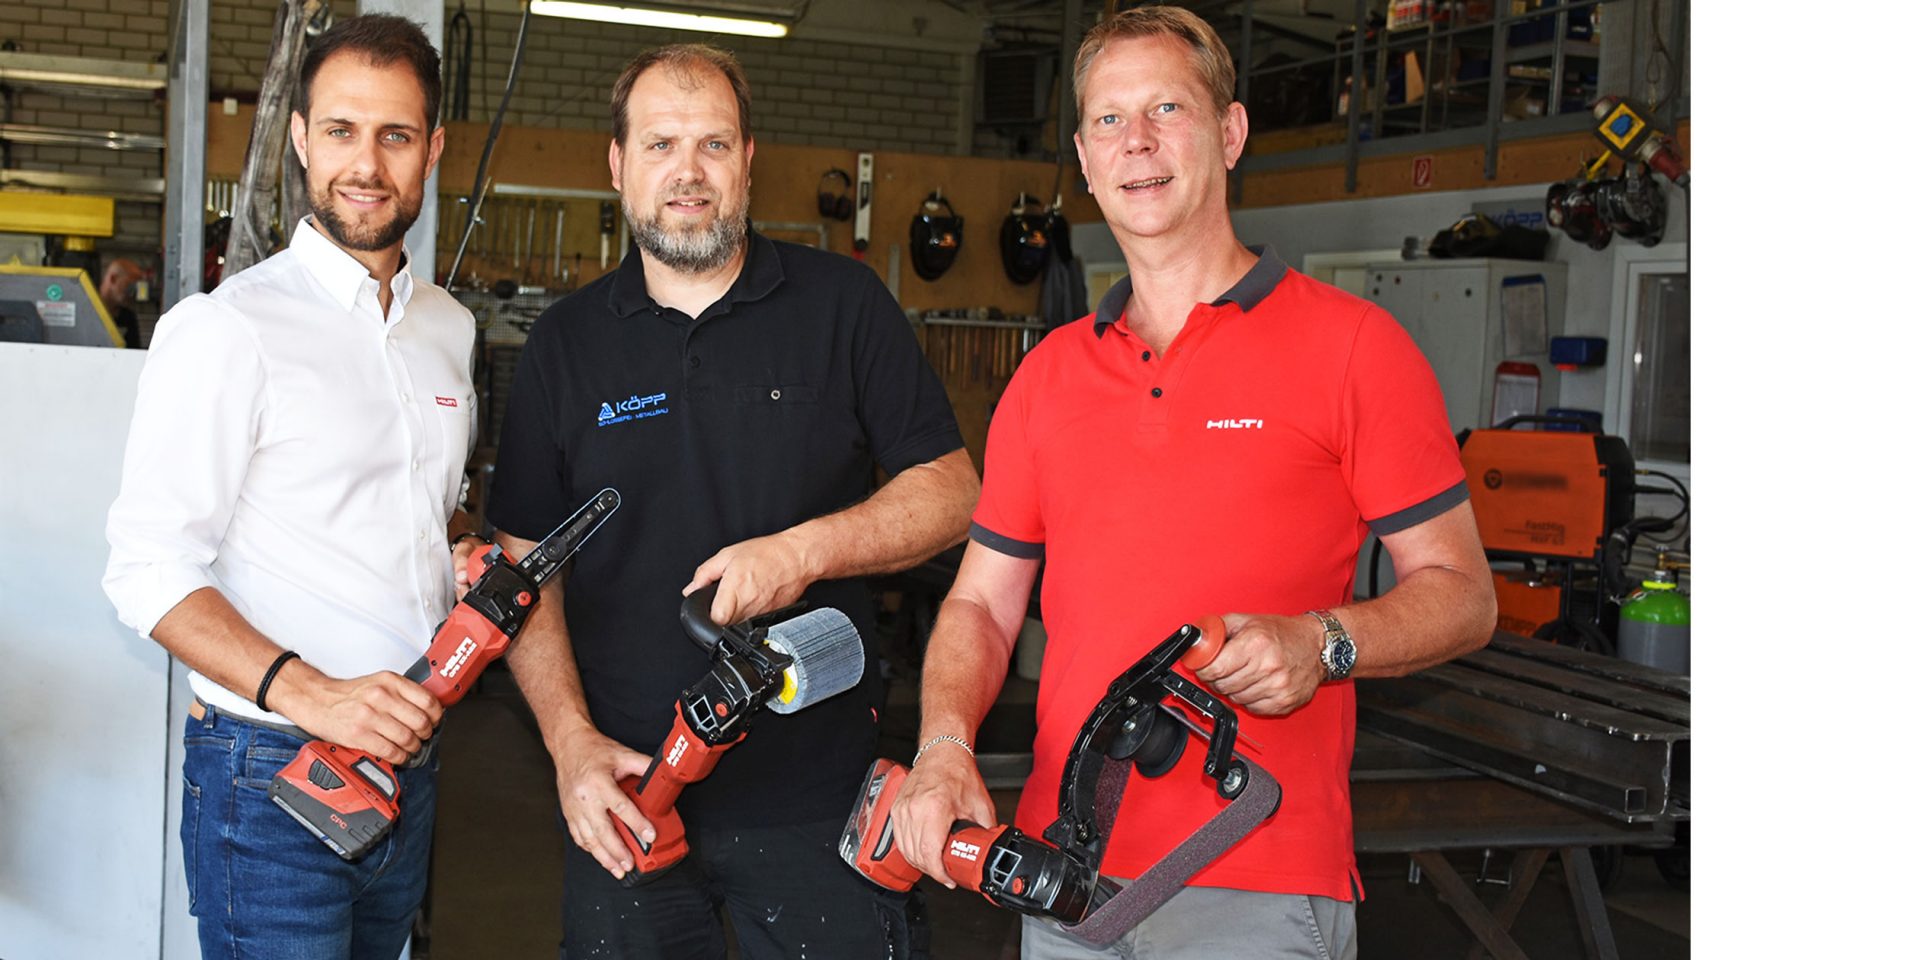  Nico Landwehrjohann, Produktmanager Akku-Technik bei Hilti (li.), und Jörg Brings, Hilti Verkaufsleiter (re.) überreichen Andreas Köpp, Geschäftsführer der Köpp Schlosserei-Metallbau GmbH, die neuen Akku-Schleifgeräte.